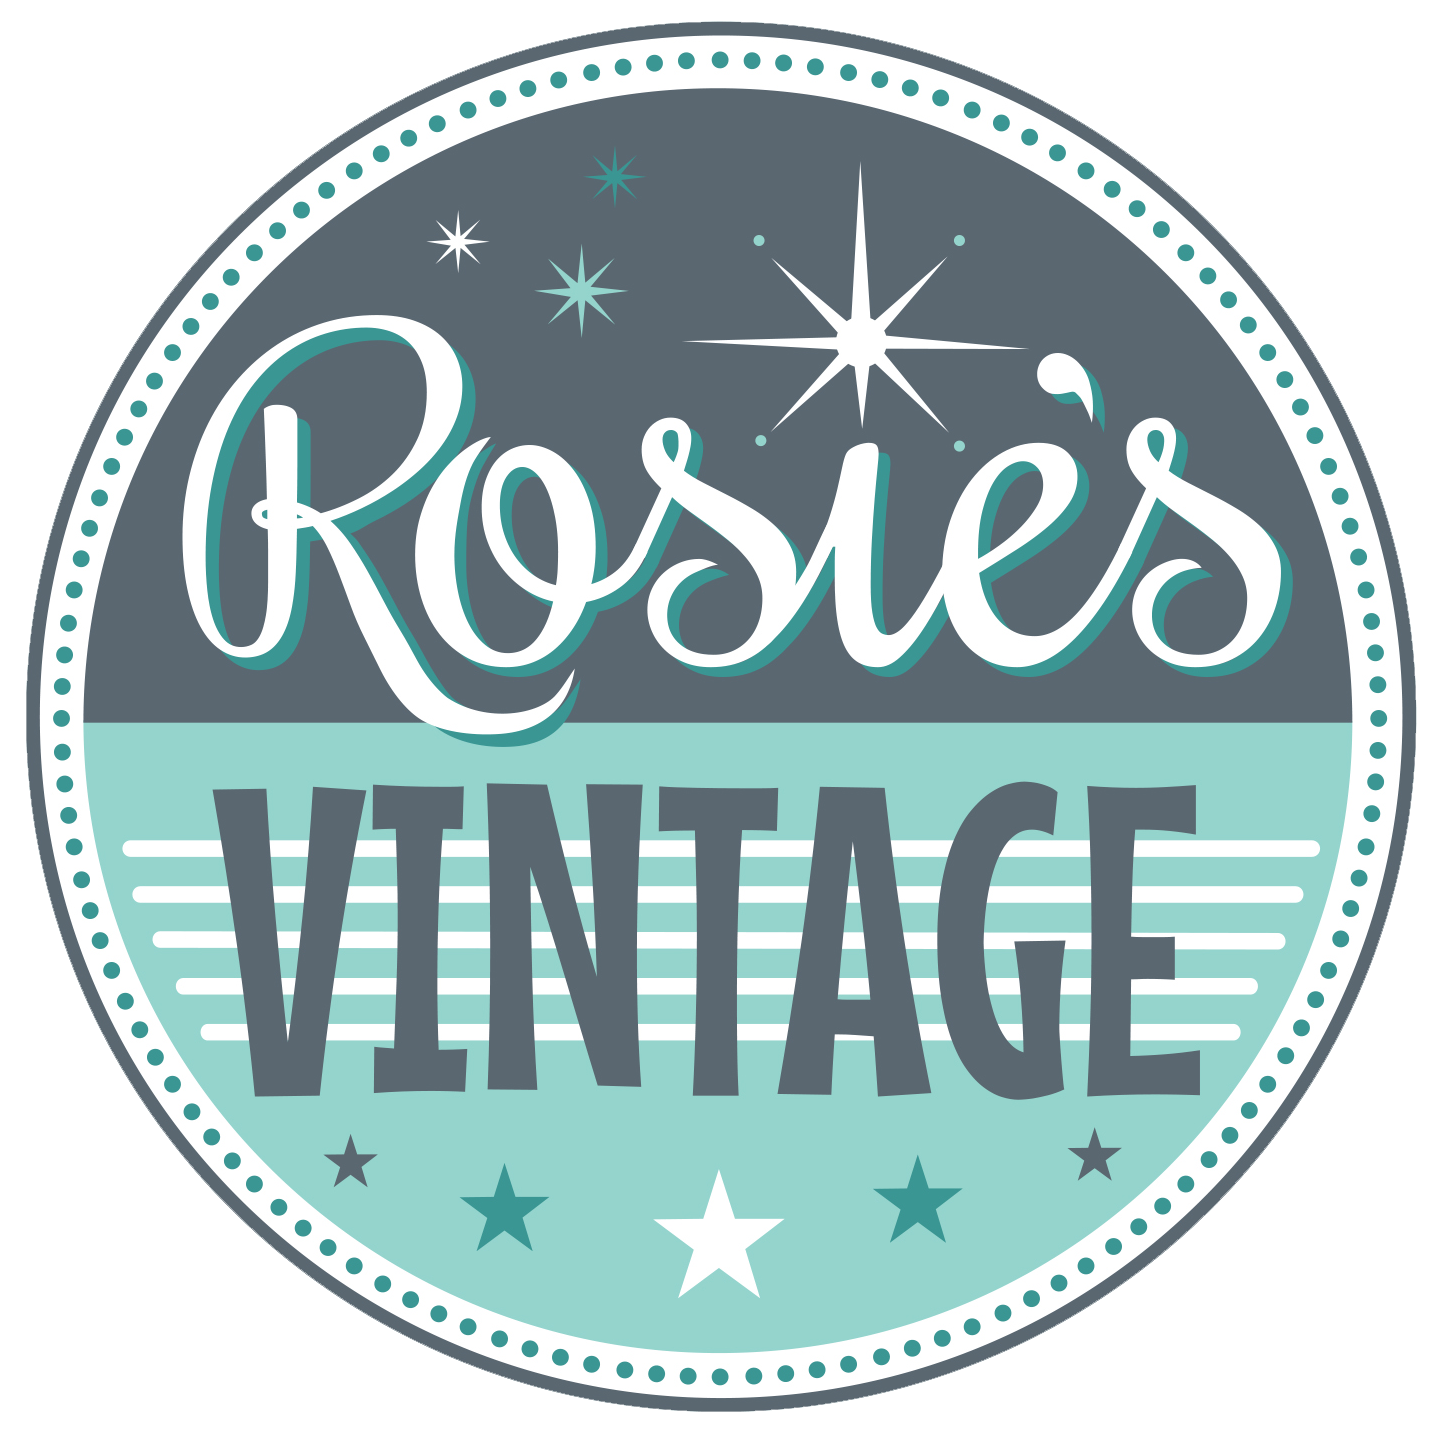 Rosie's Vintage